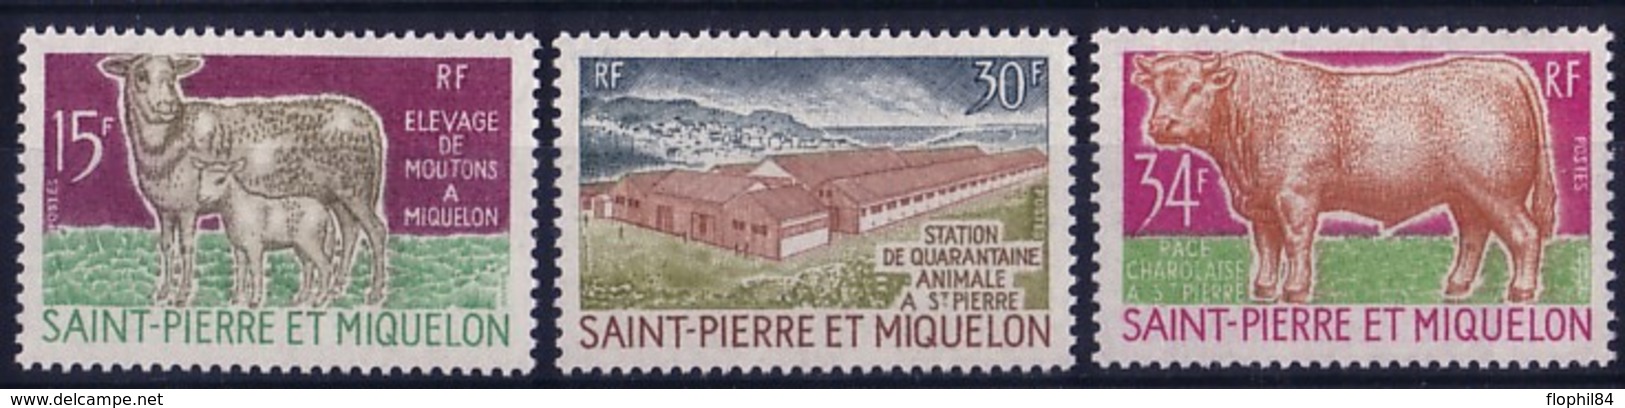 ST PIERRE ET MIQUELON - SERIE ELEVAGE - N°407 A 409 - NEUF SANS TRACE DE CHARNIERE - COTE 62€ - Unused Stamps